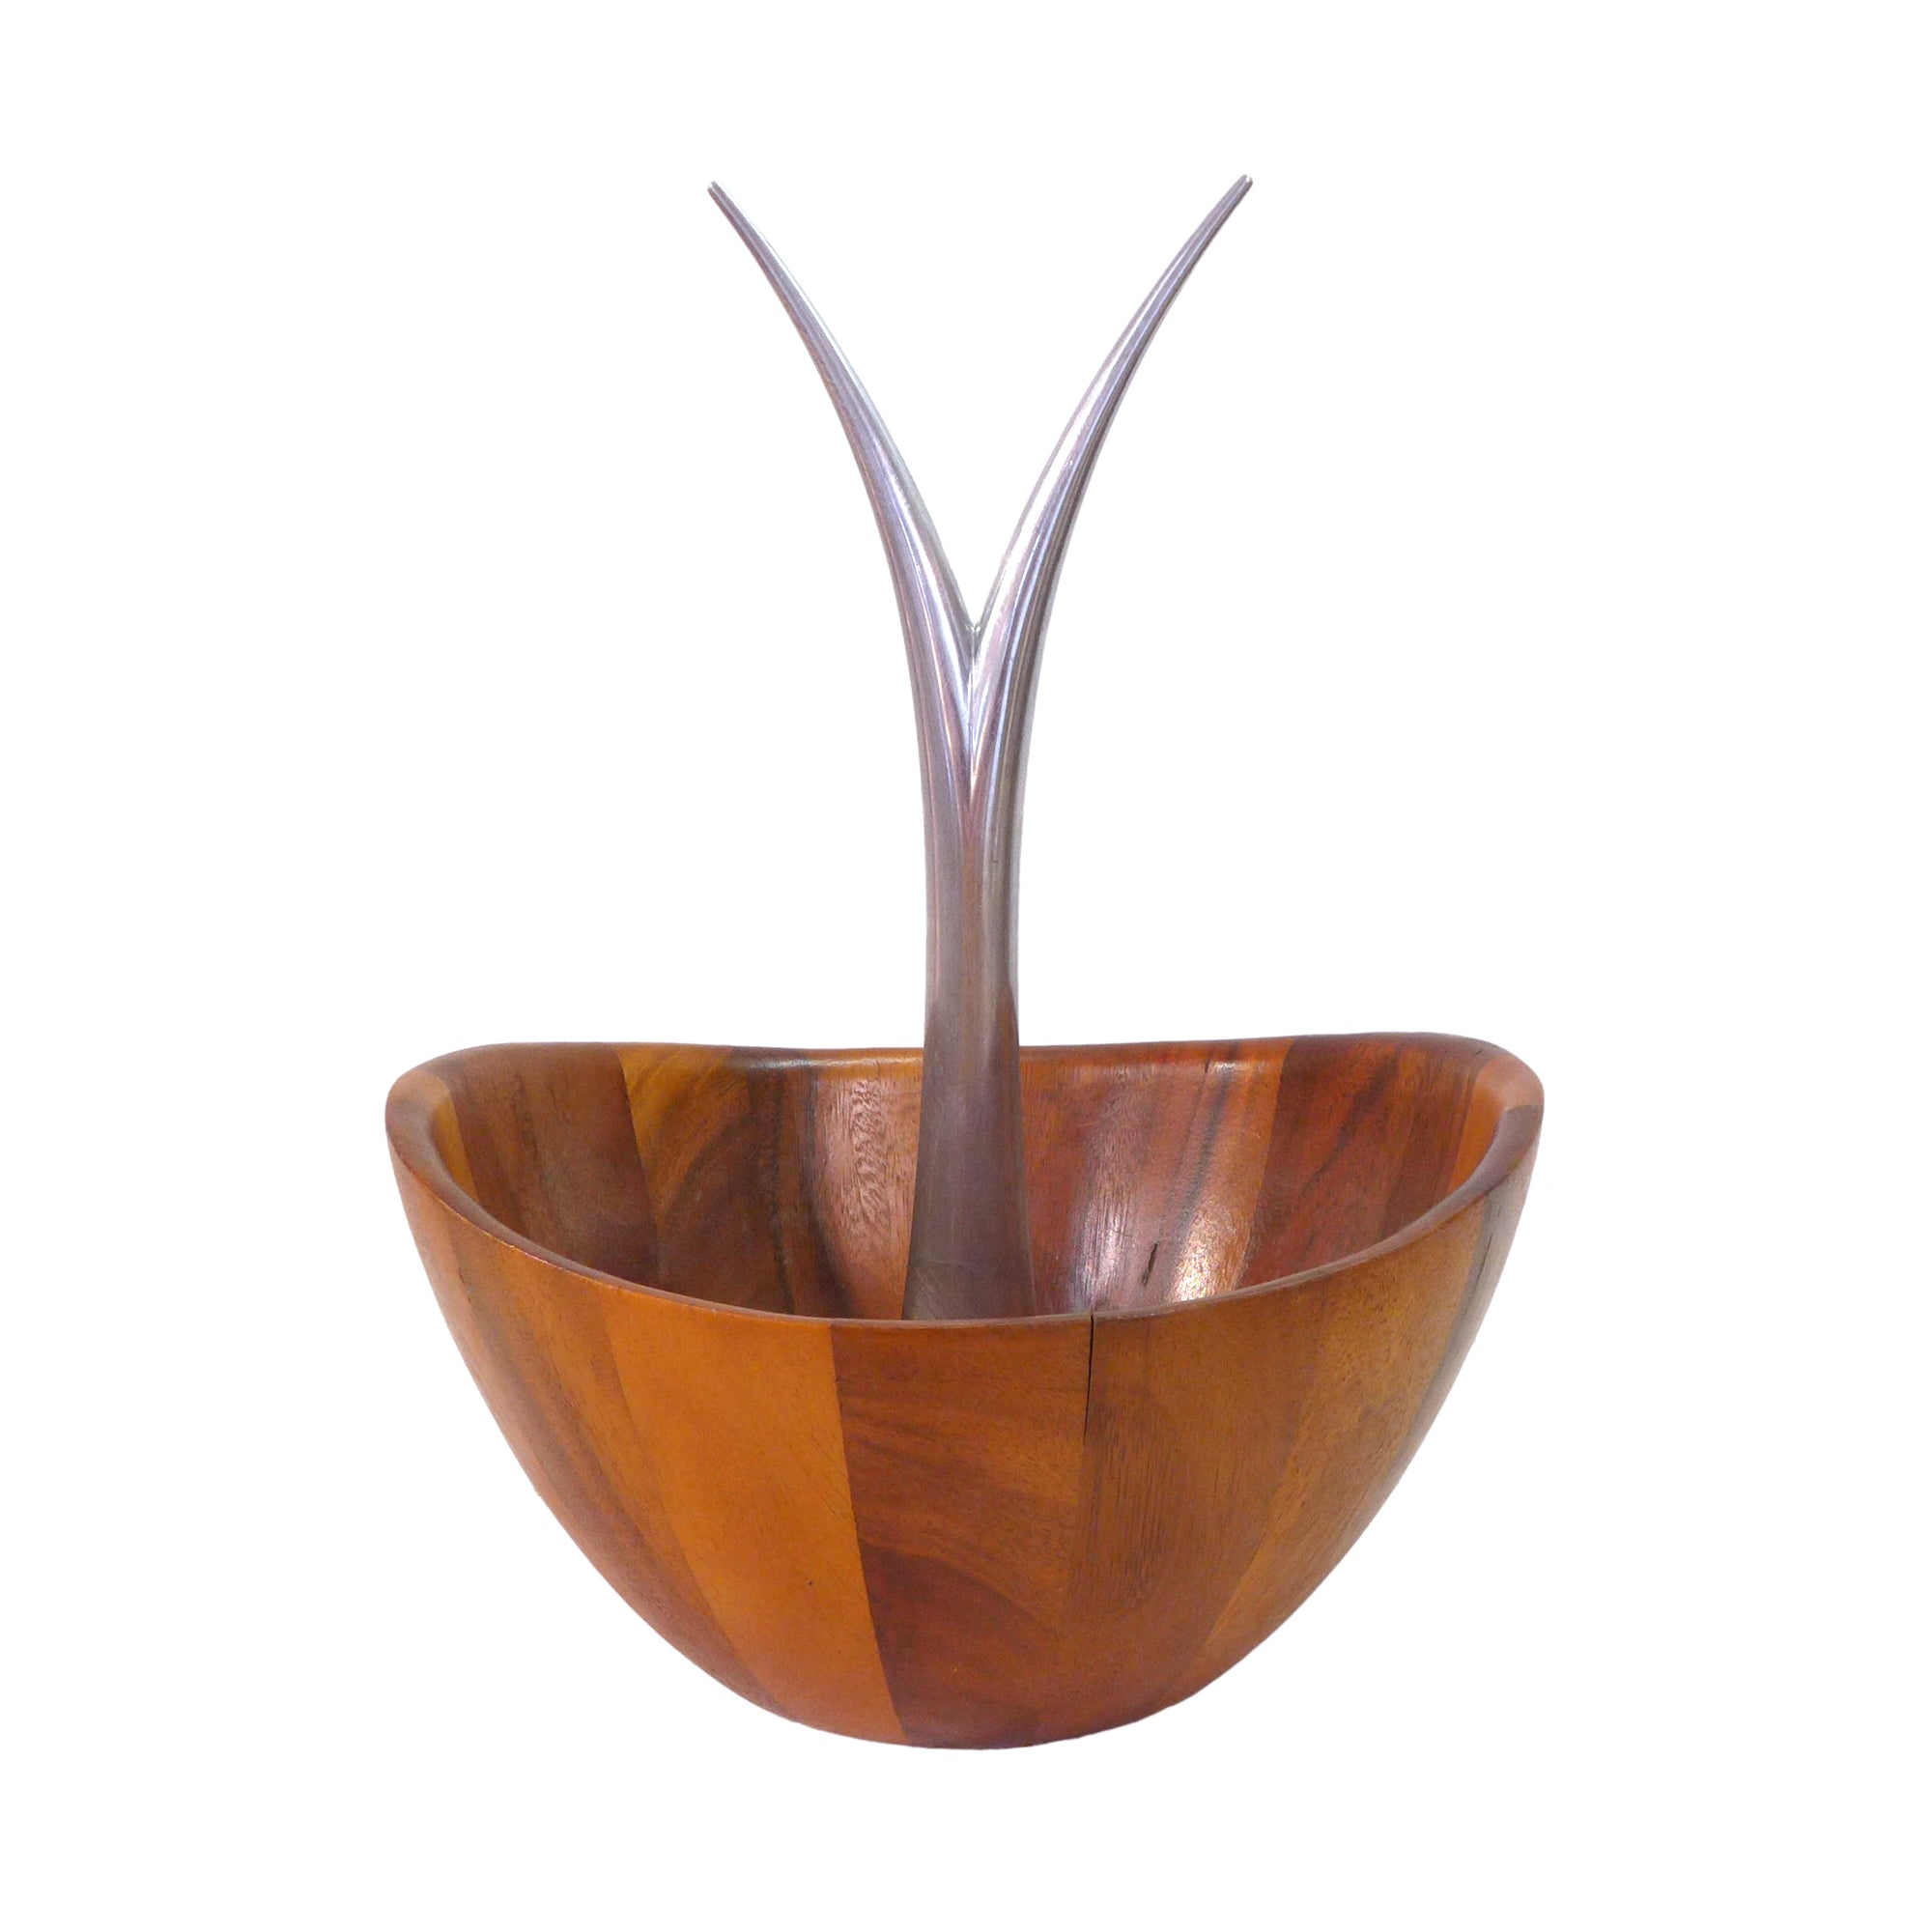 Aluminum & Laminated Wood Bowl by Nambé